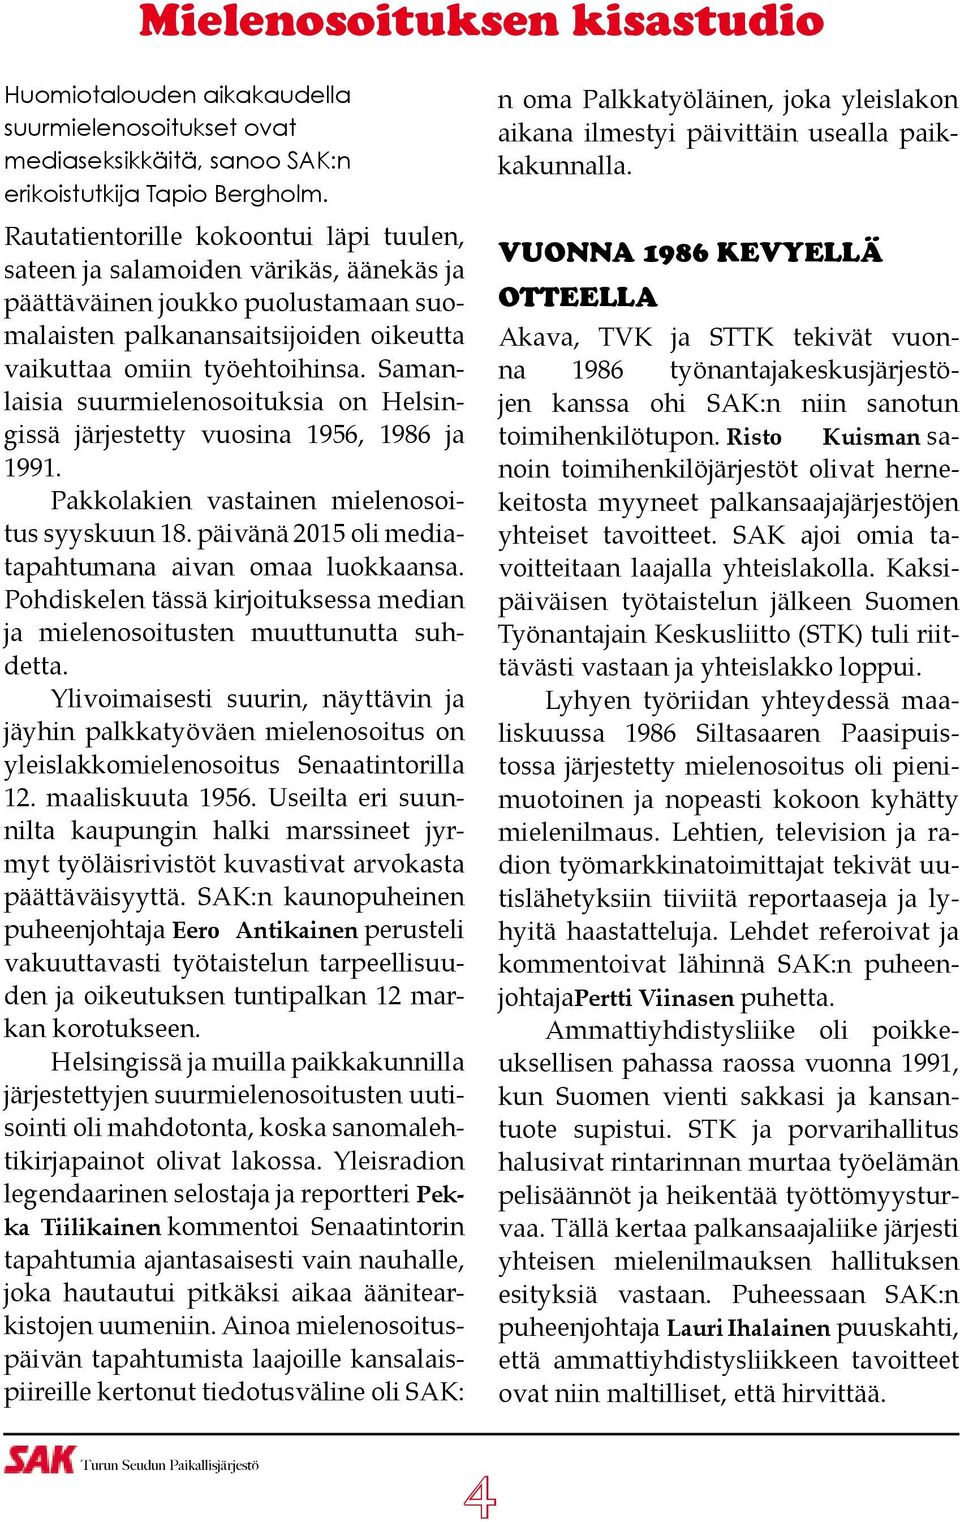 Samanlaisia suurmielenosoituksia on Helsingissä järjestetty vuosina 1956, 1986 ja 1991. Pakkolakien vastainen mielenosoitus syyskuun 18. päivänä 2015 oli mediatapahtumana aivan omaa luokkaansa.